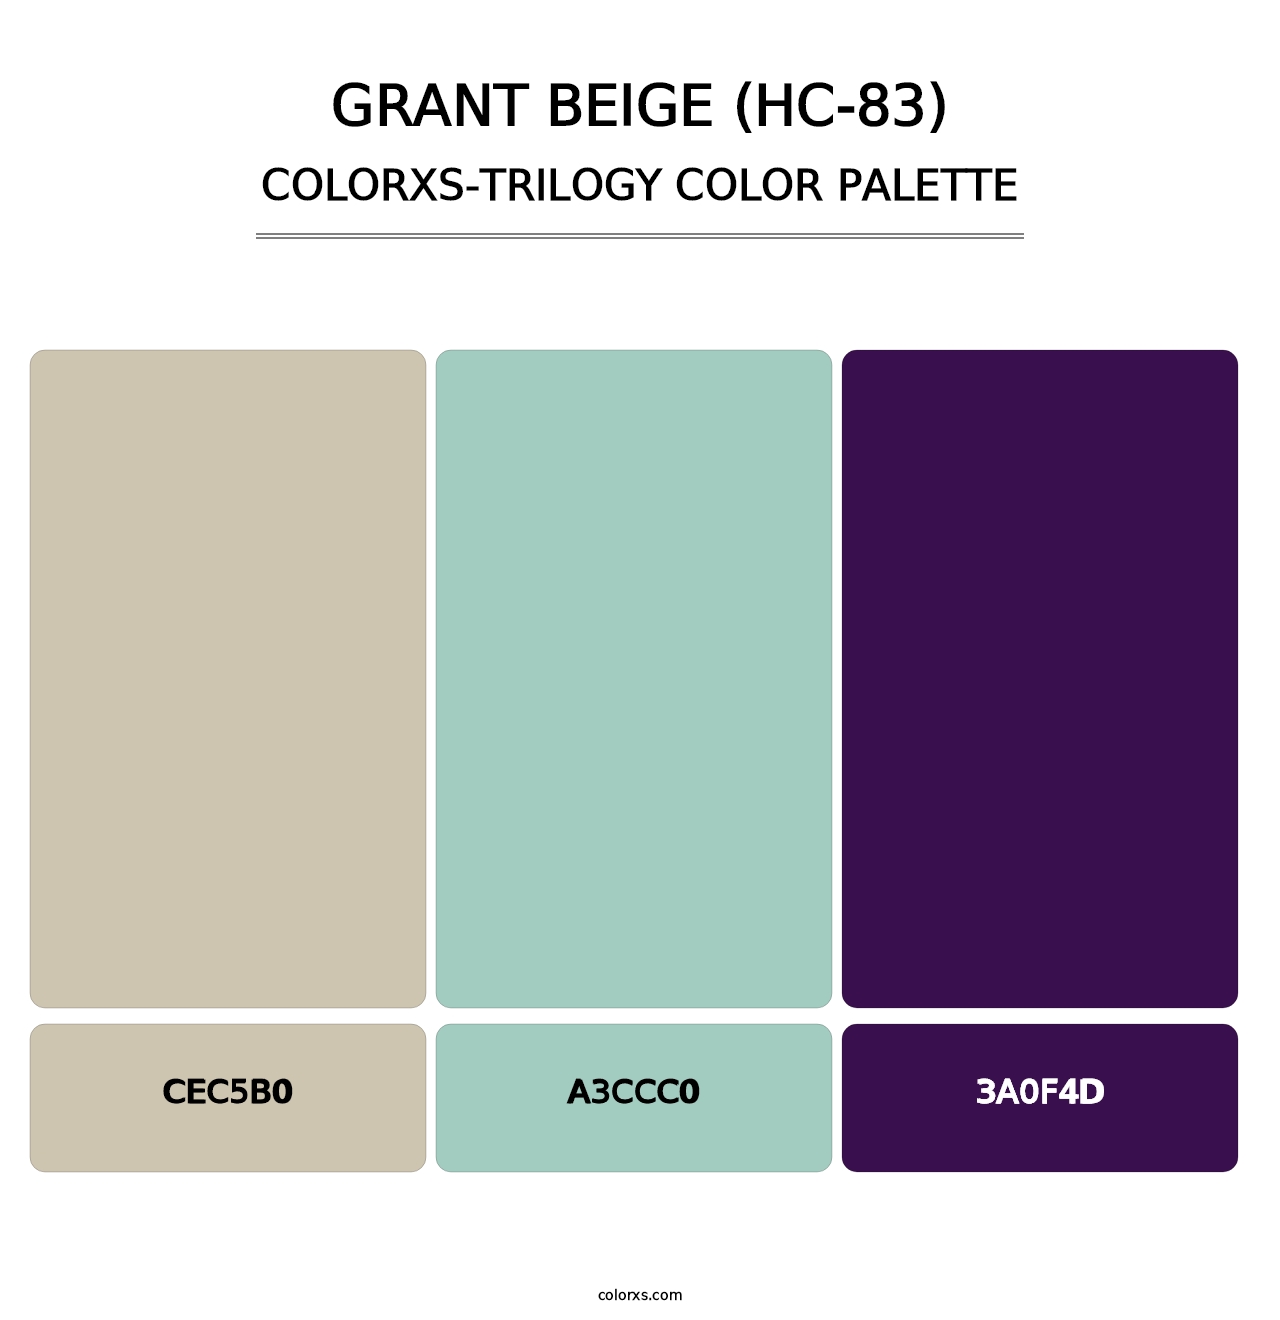 Grant Beige (HC-83) - Colorxs Trilogy Palette